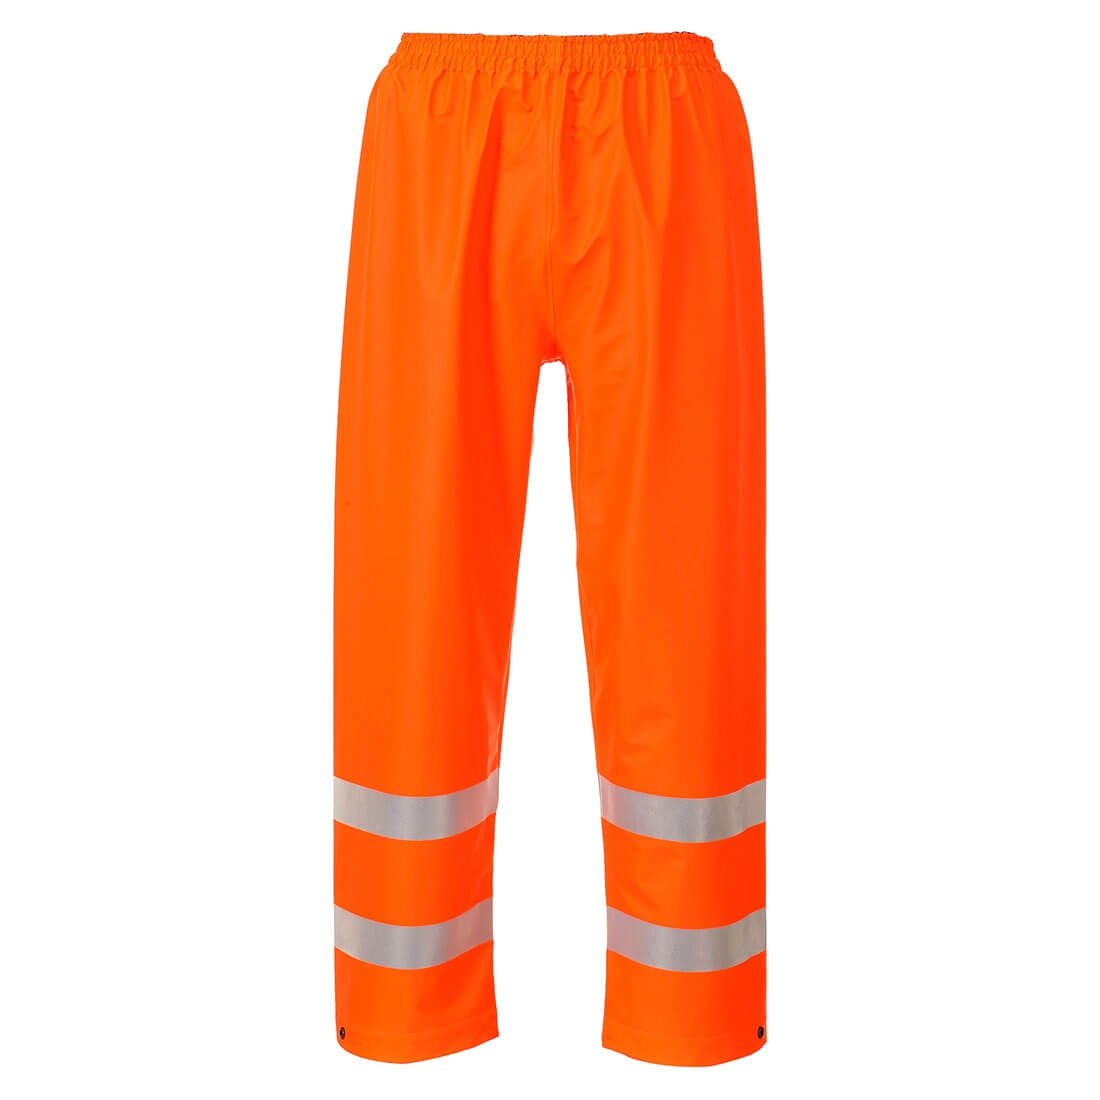 Pantaloni Sealtex Flame ad alta visibilità - Abbigliamento di protezione